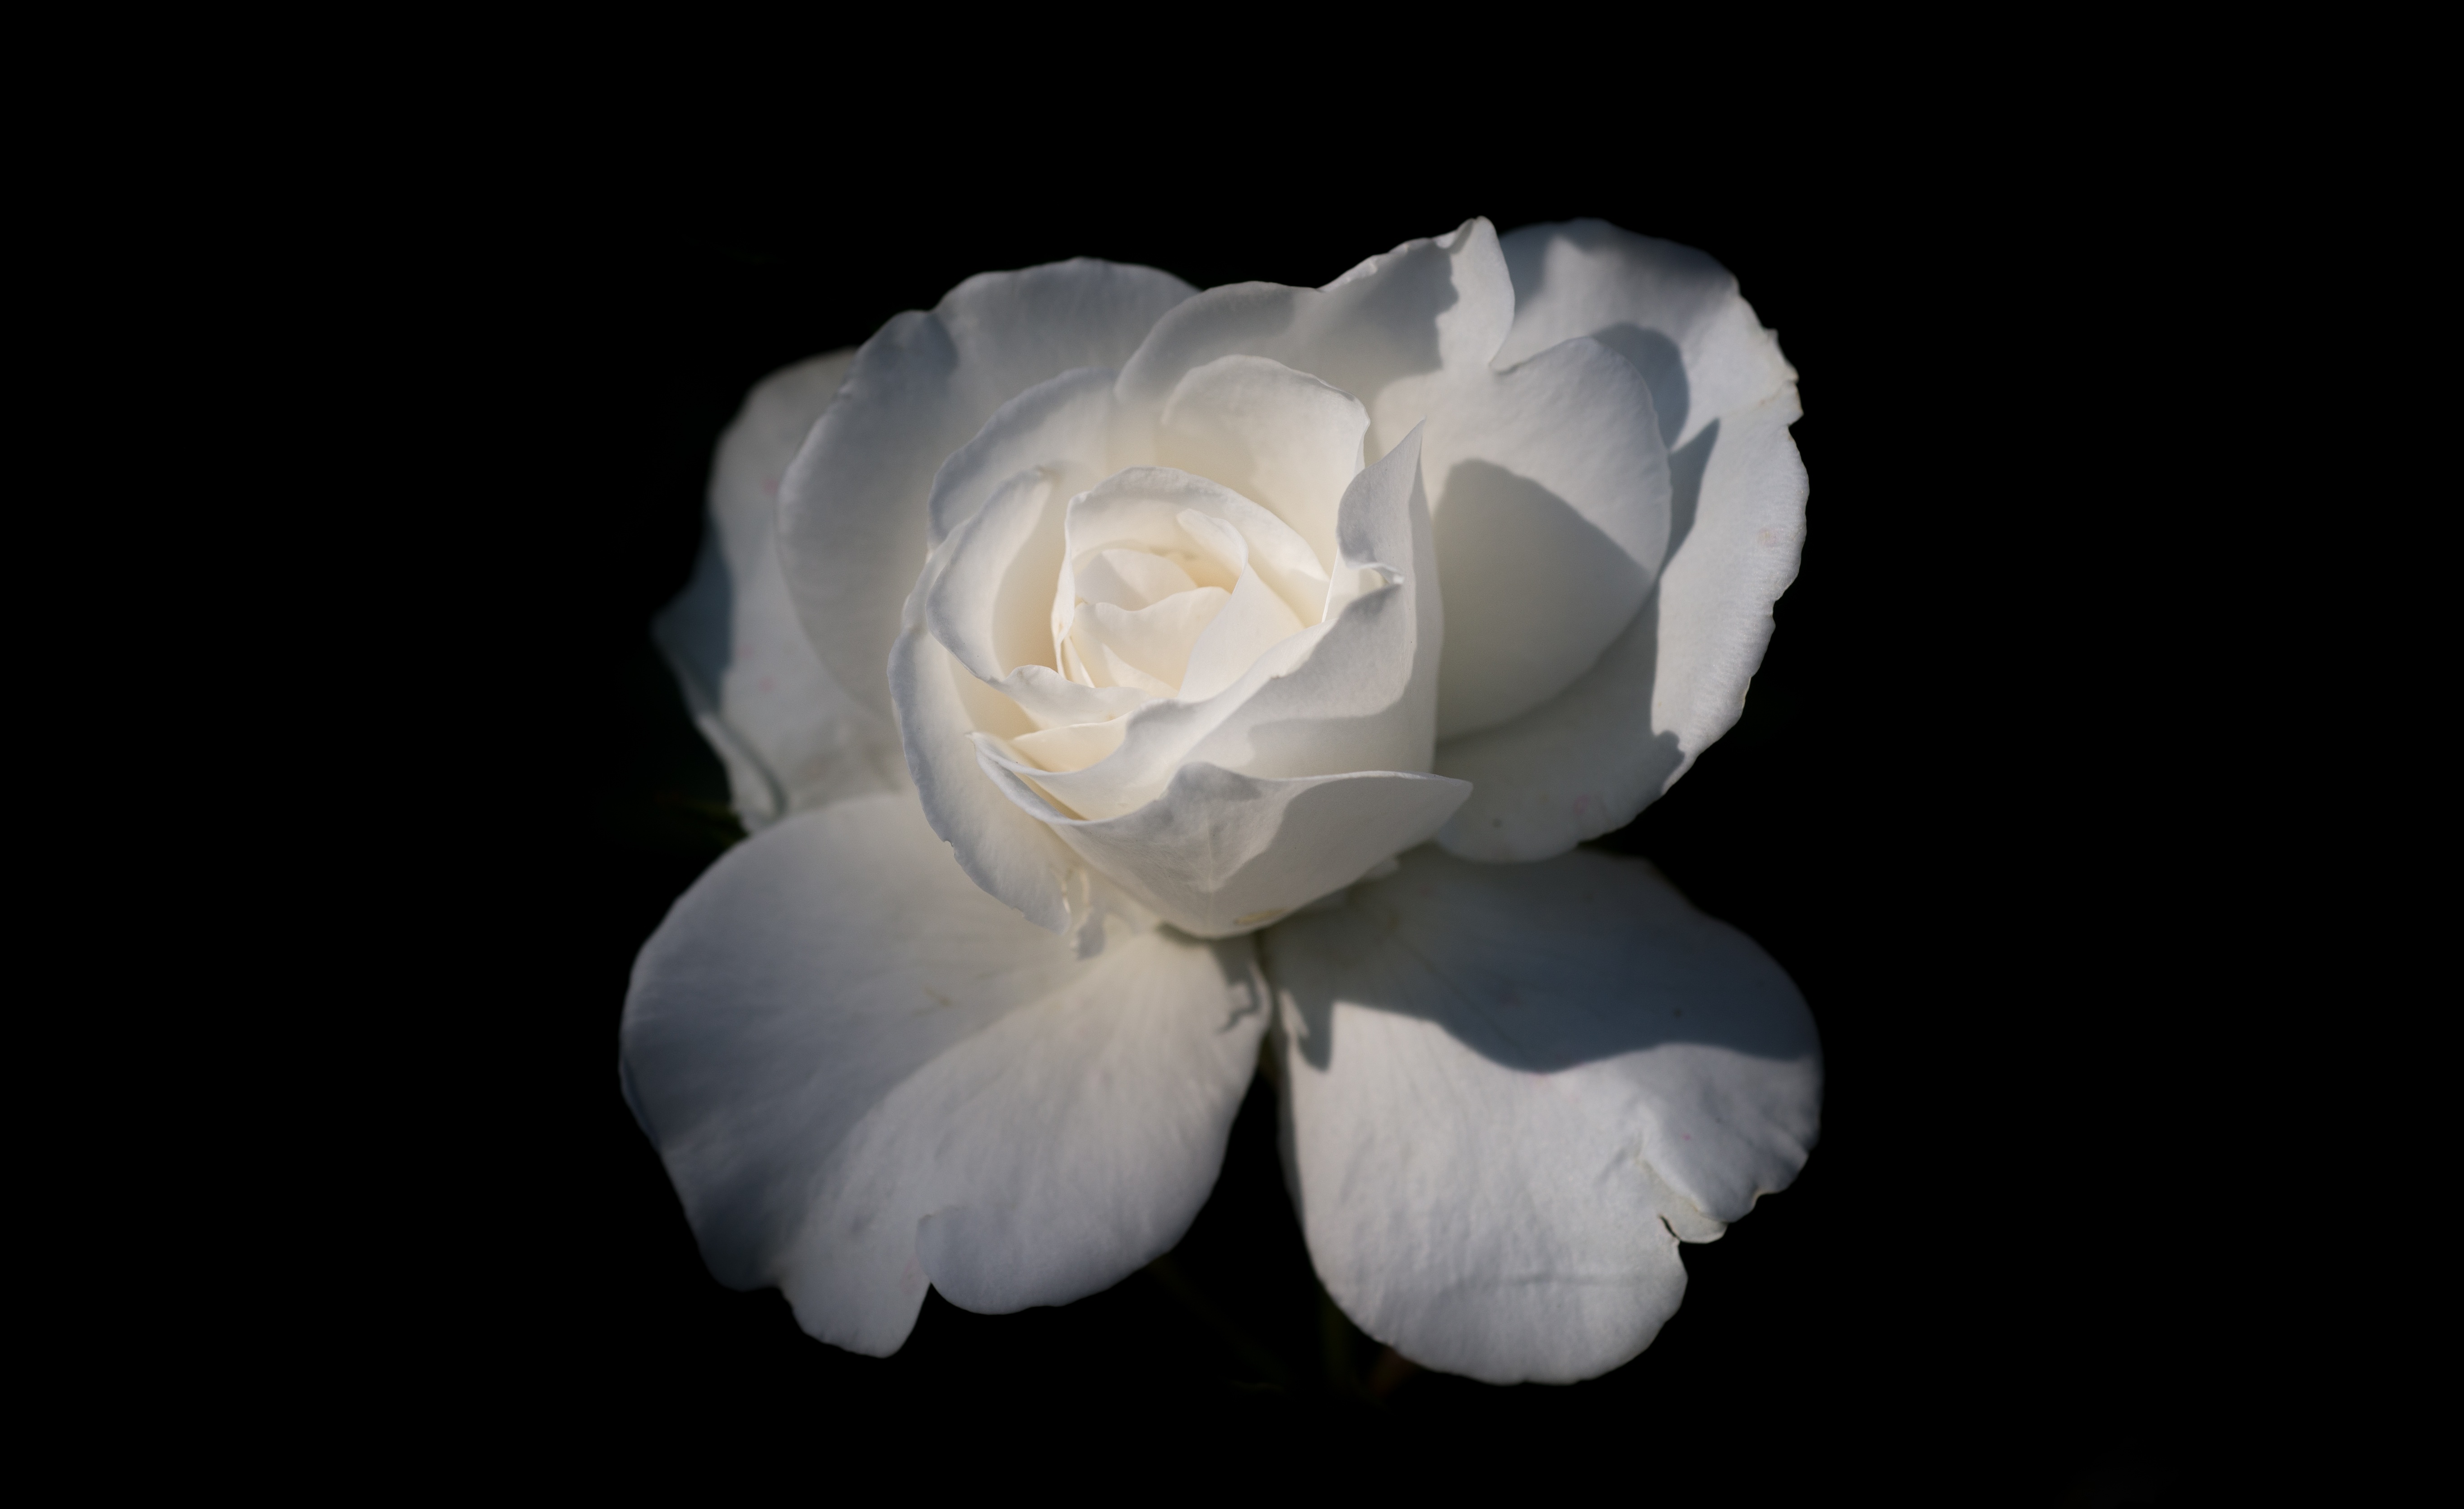 Картинка Розы белая цветок вблизи Черный фон 5457x3341 роза Белый белые белых Цветы на черном фоне Крупным планом